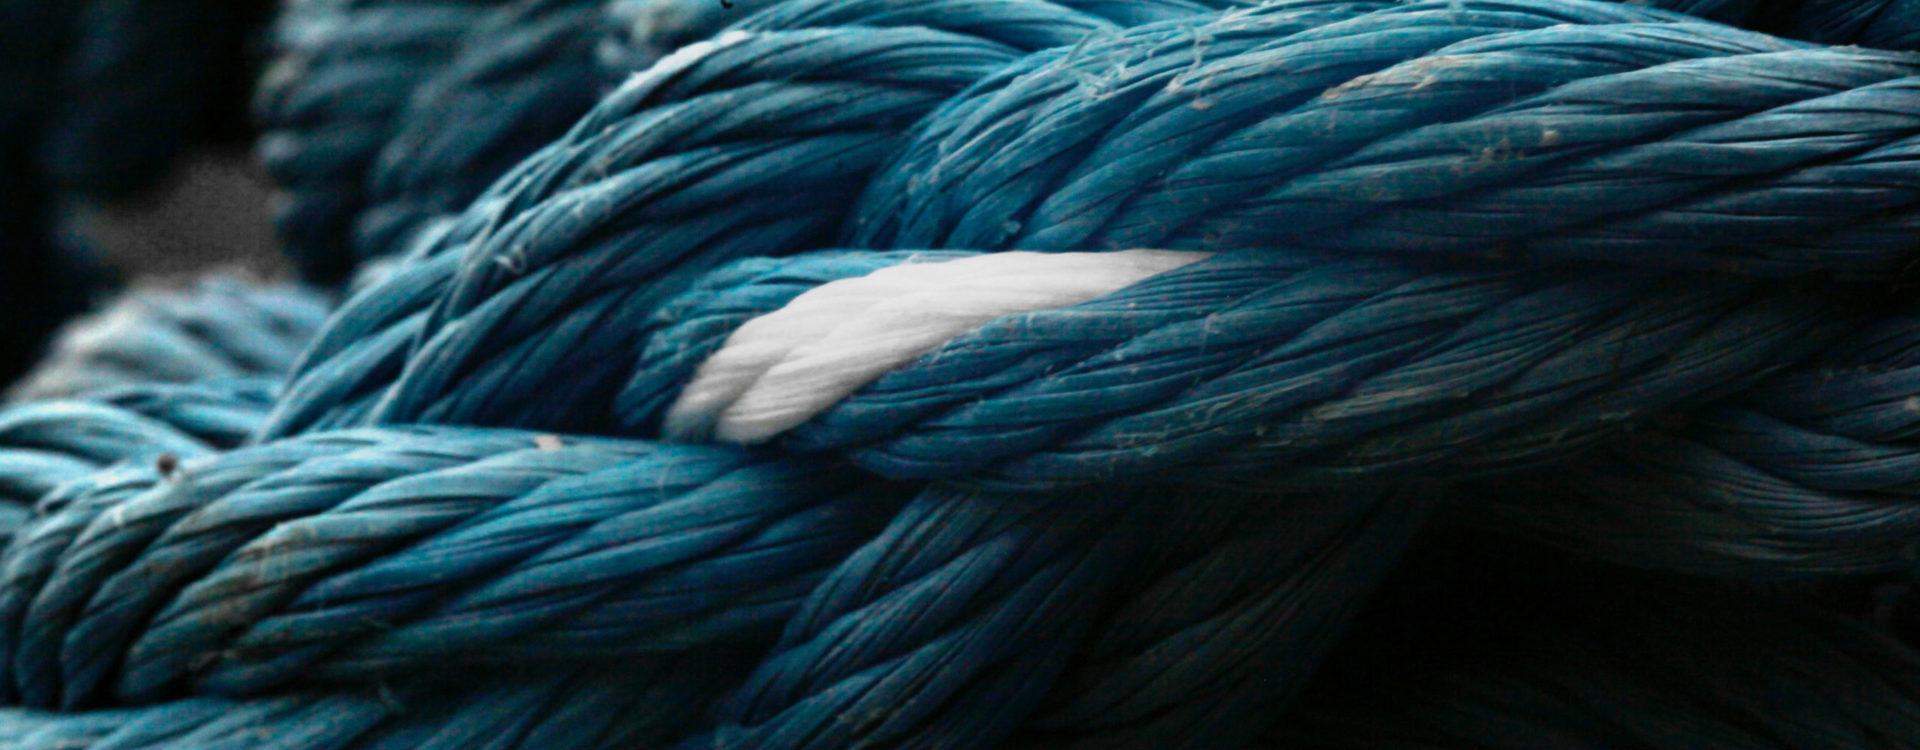 blått rep omslag